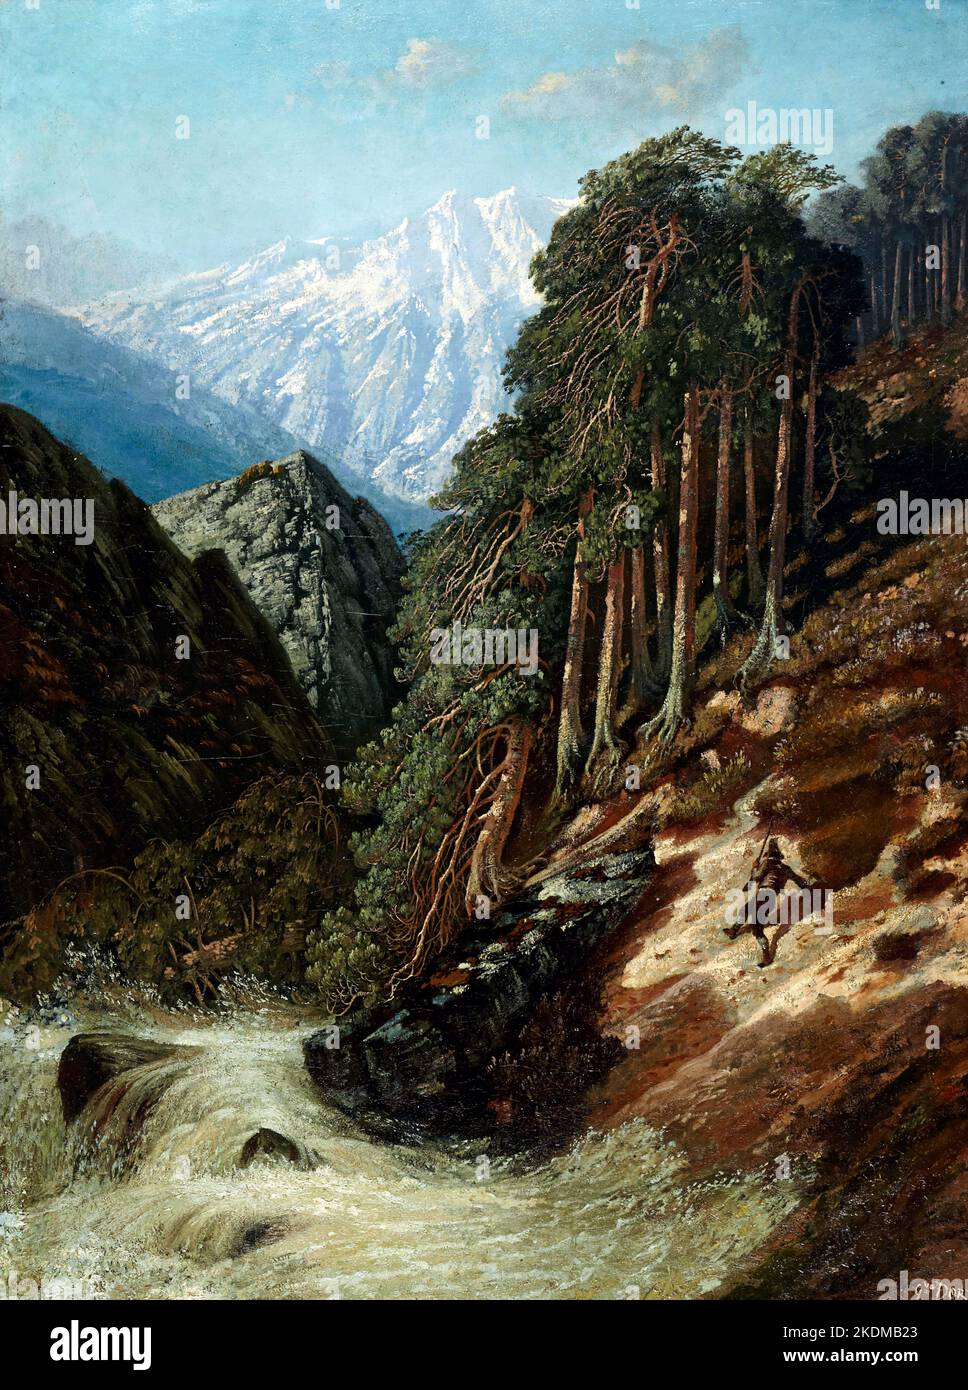 Gustave Dore. Paysage alpin avec Beck par Paul Gustave Louis Christophe doré (1832-1883), huile sur toile, après 1870 Banque D'Images